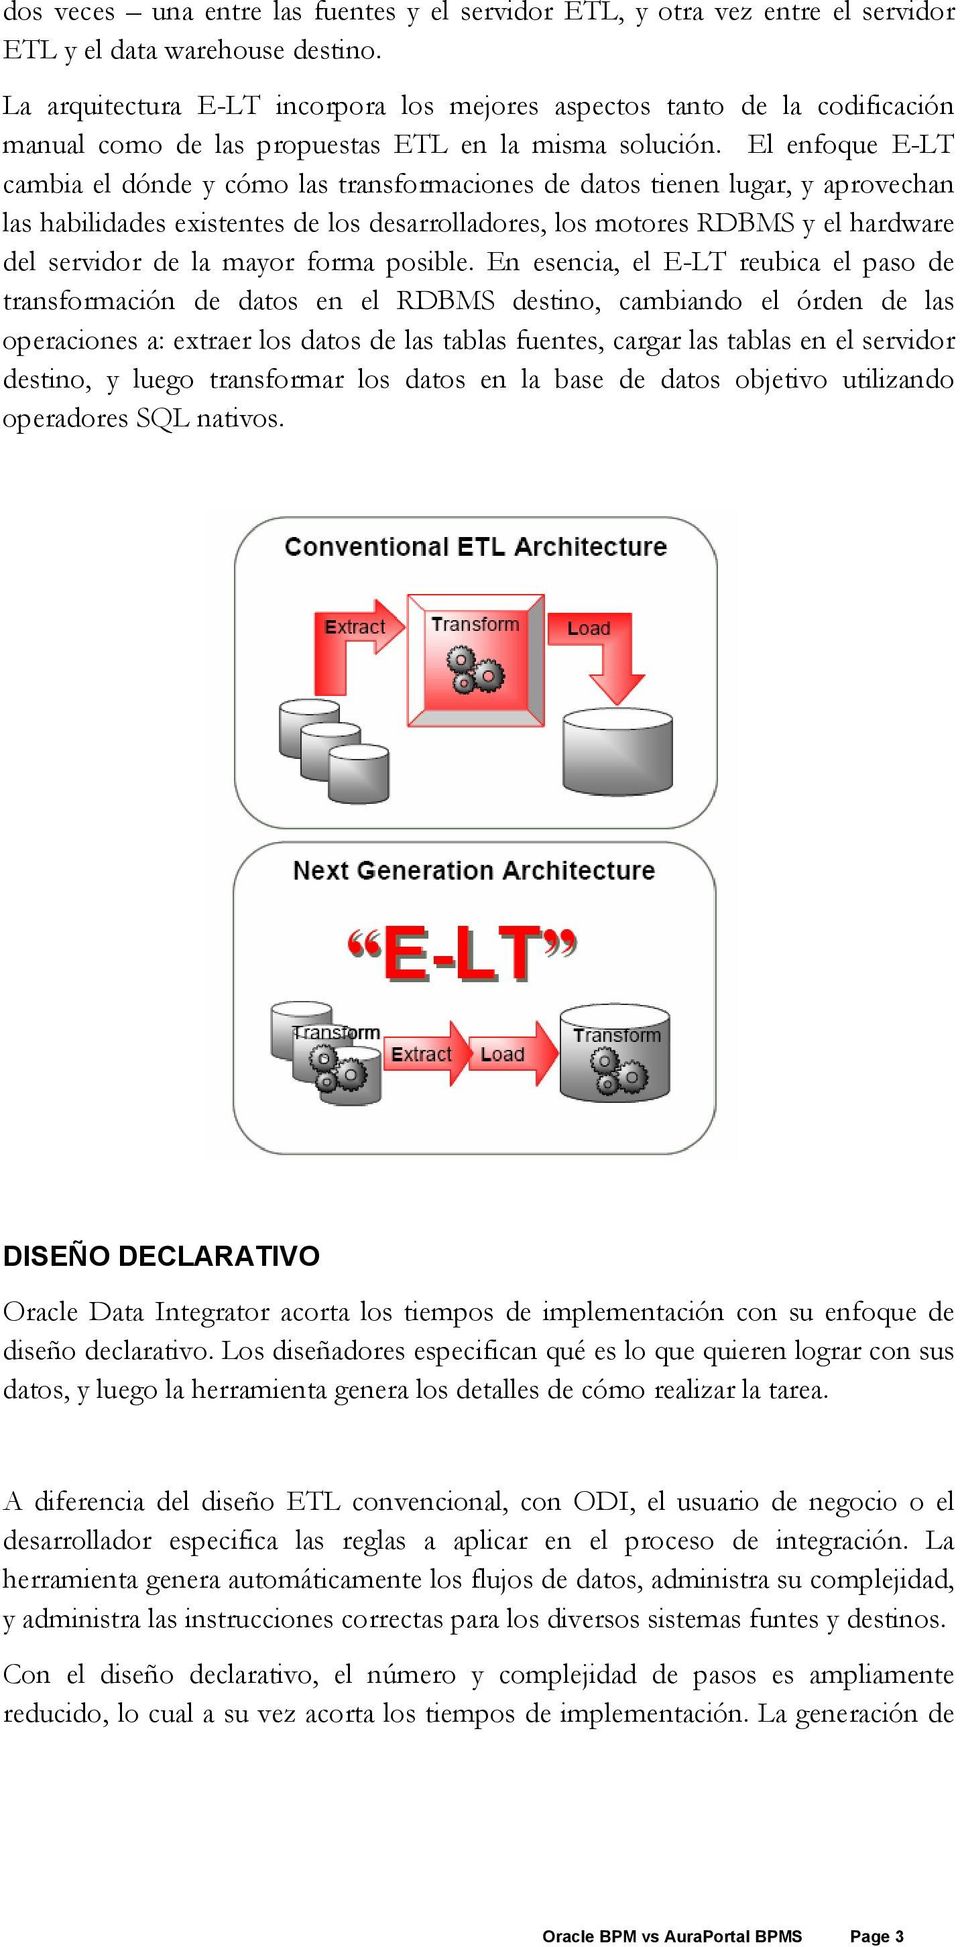 El enfoque E-LT cambia el dónde y cómo las transformaciones de datos tienen lugar, y aprovechan las habilidades existentes de los desarrolladores, los motores RDBMS y el hardware del servidor de la